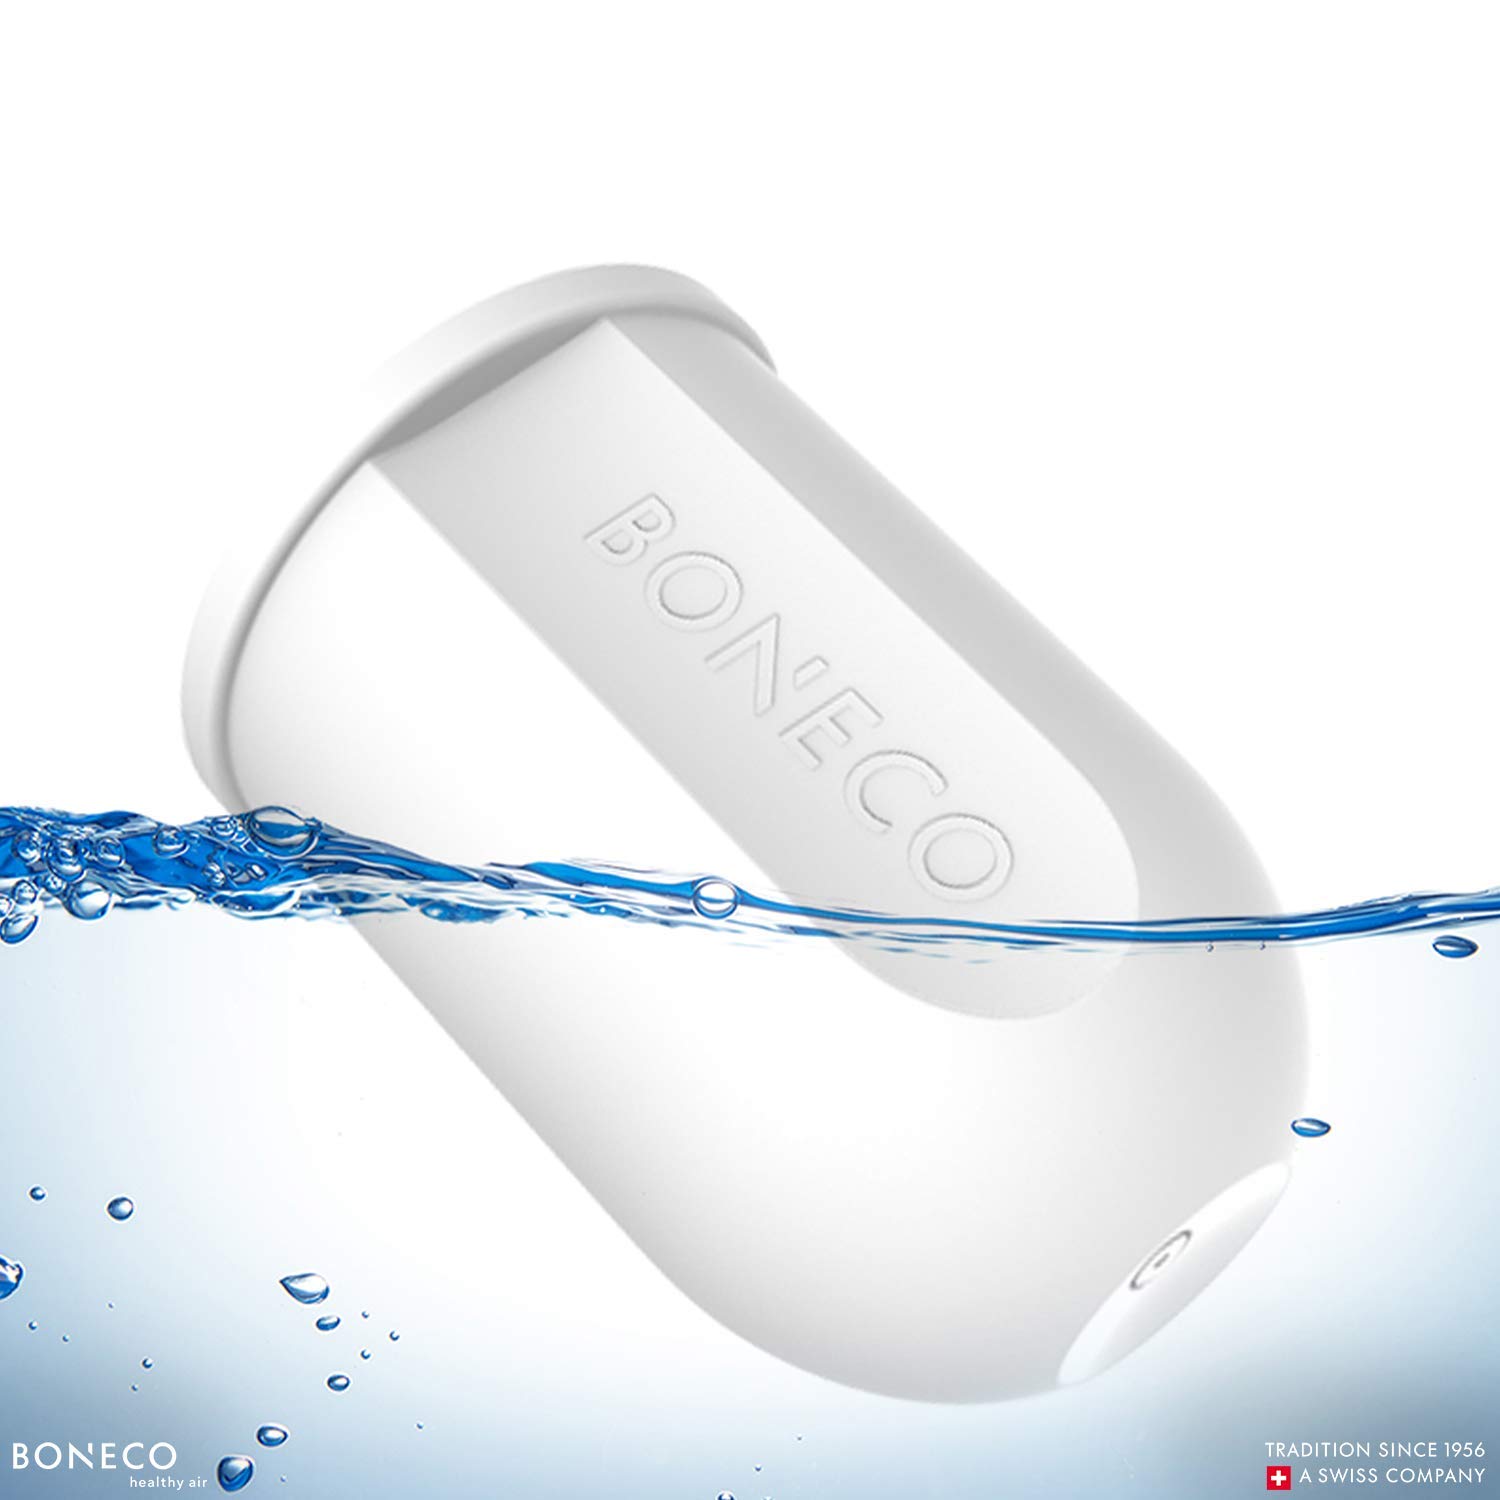 BONECO Aqua Pro 2-in-1 Humidifier Filter A250 , White